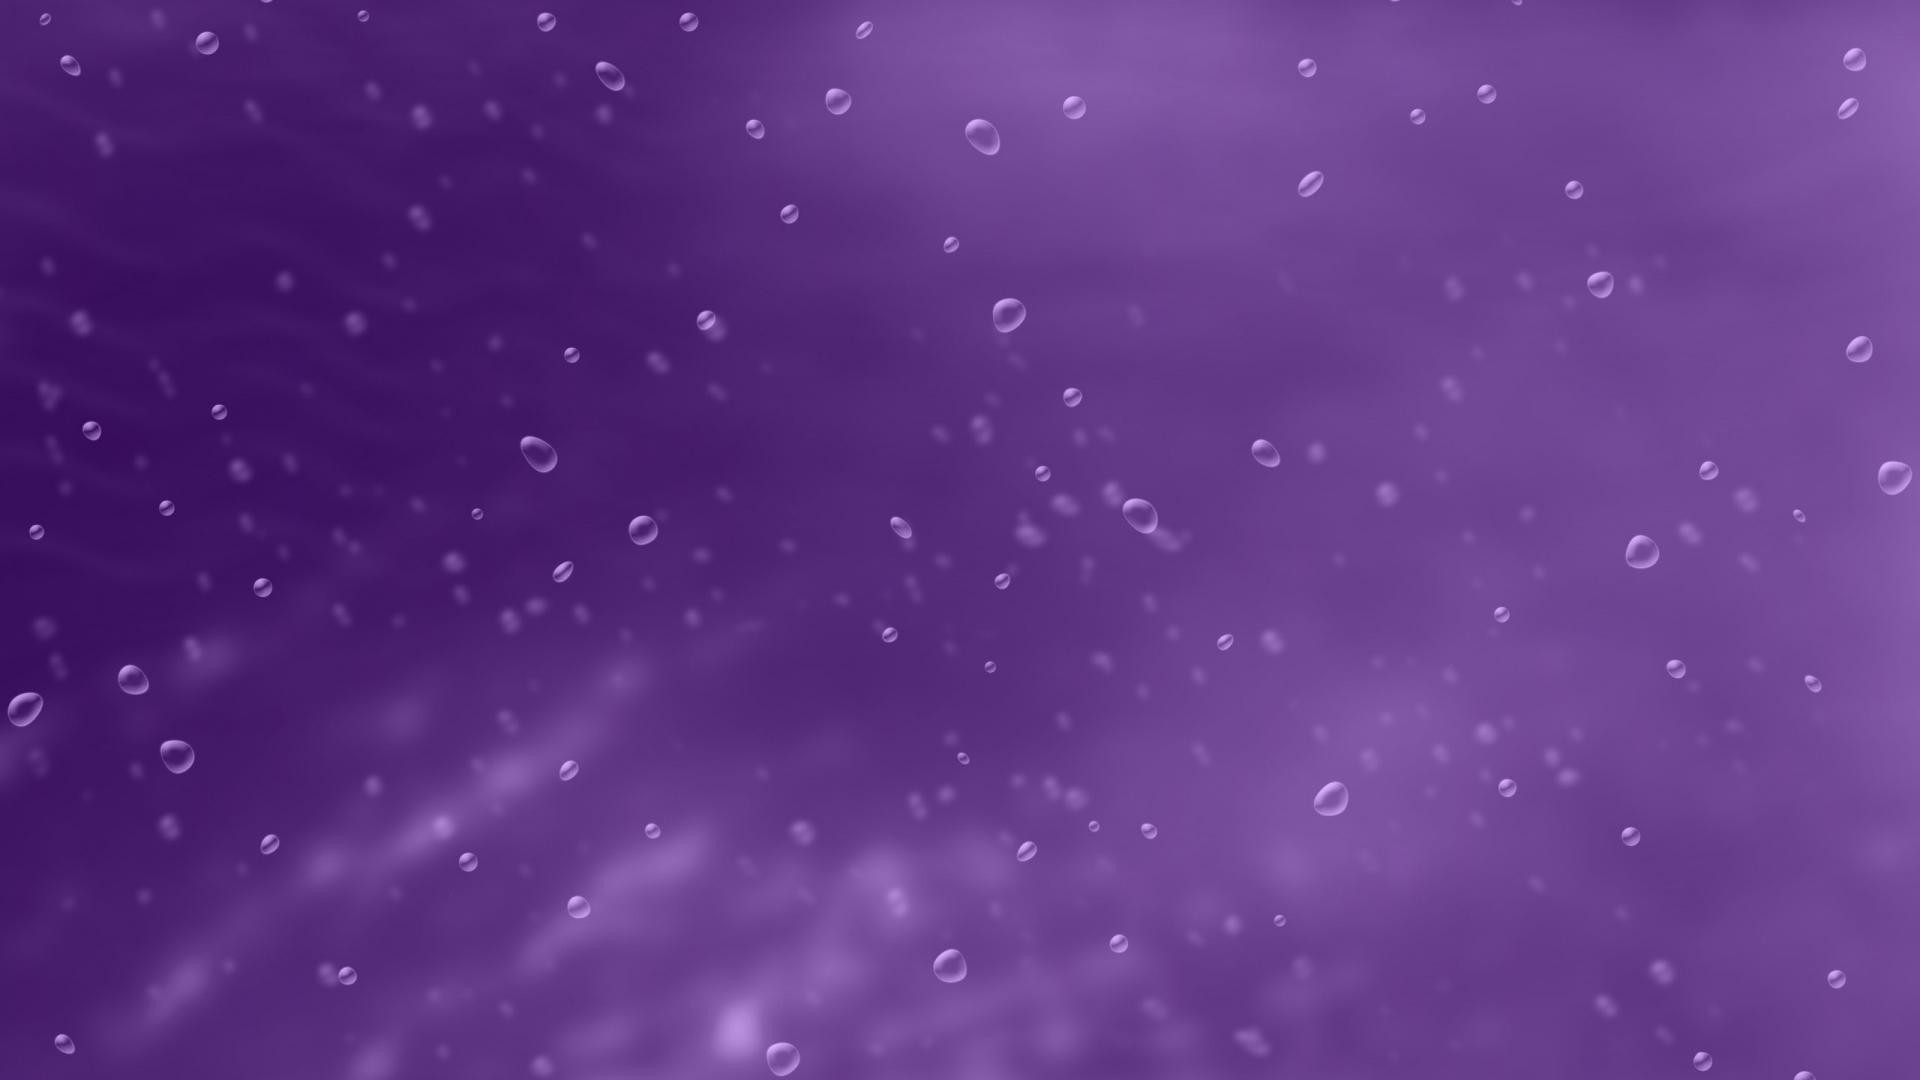 Dark purple bubble for desktop wide wallpapers1280x800,1440×900,1680×1050 – hd